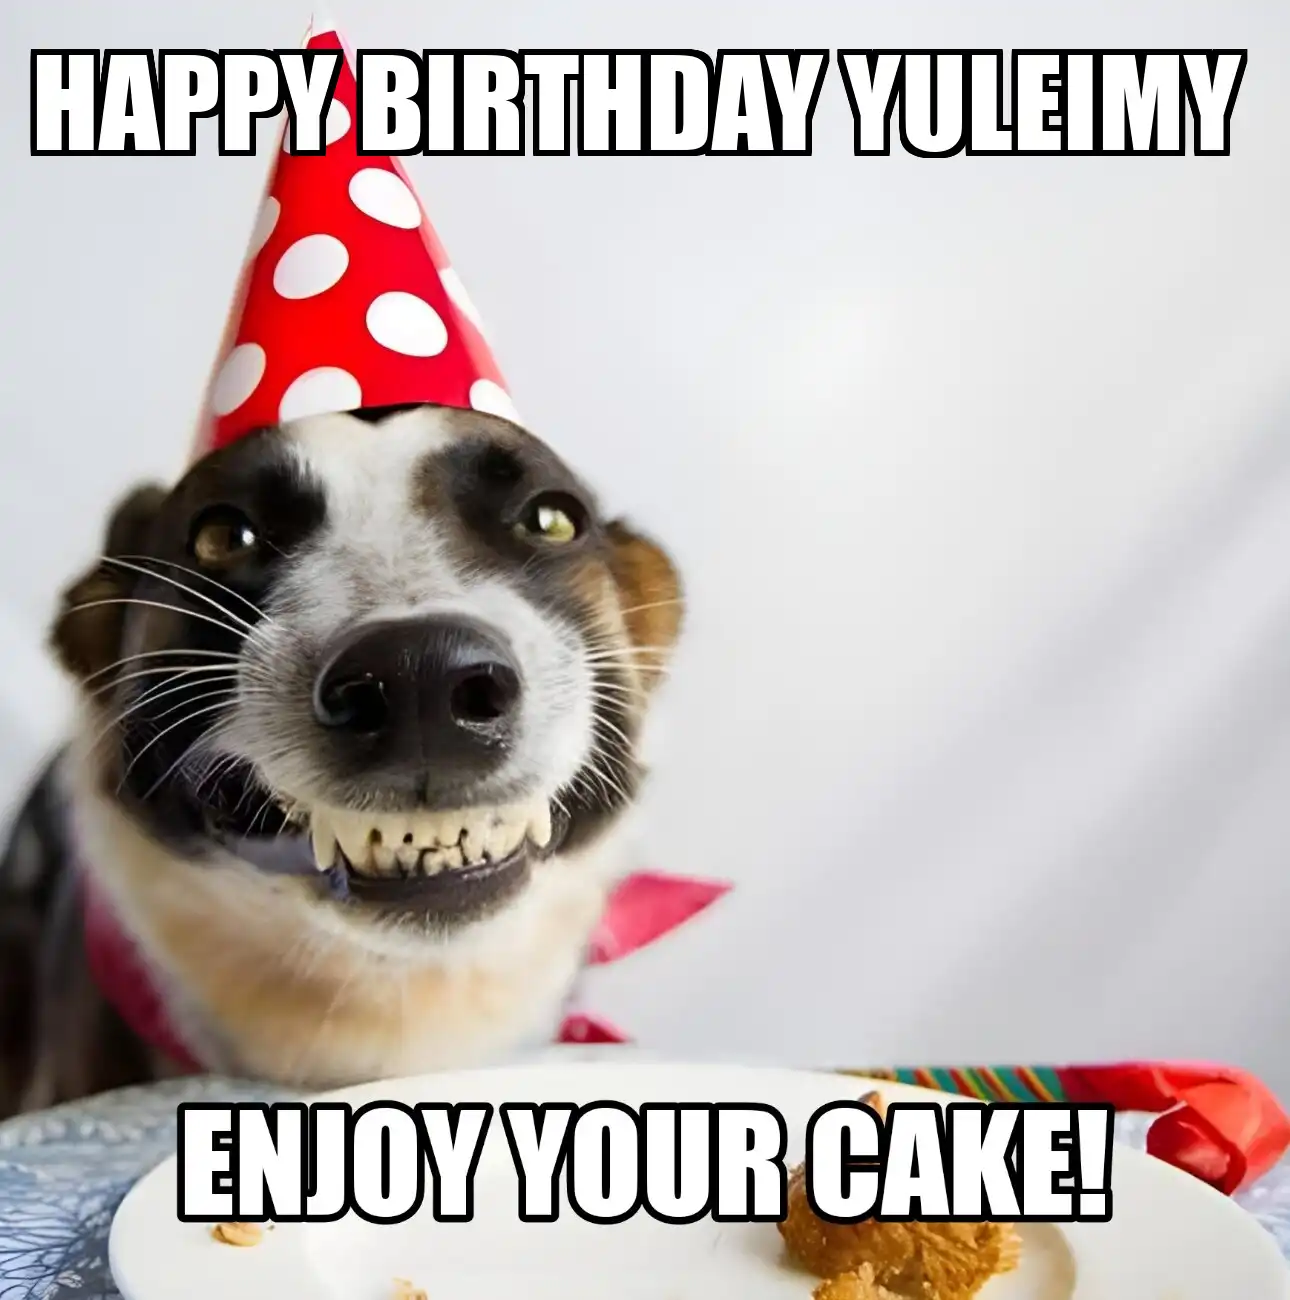 Happy Birthday Yuleimy Enjoy Your Cake Dog Meme